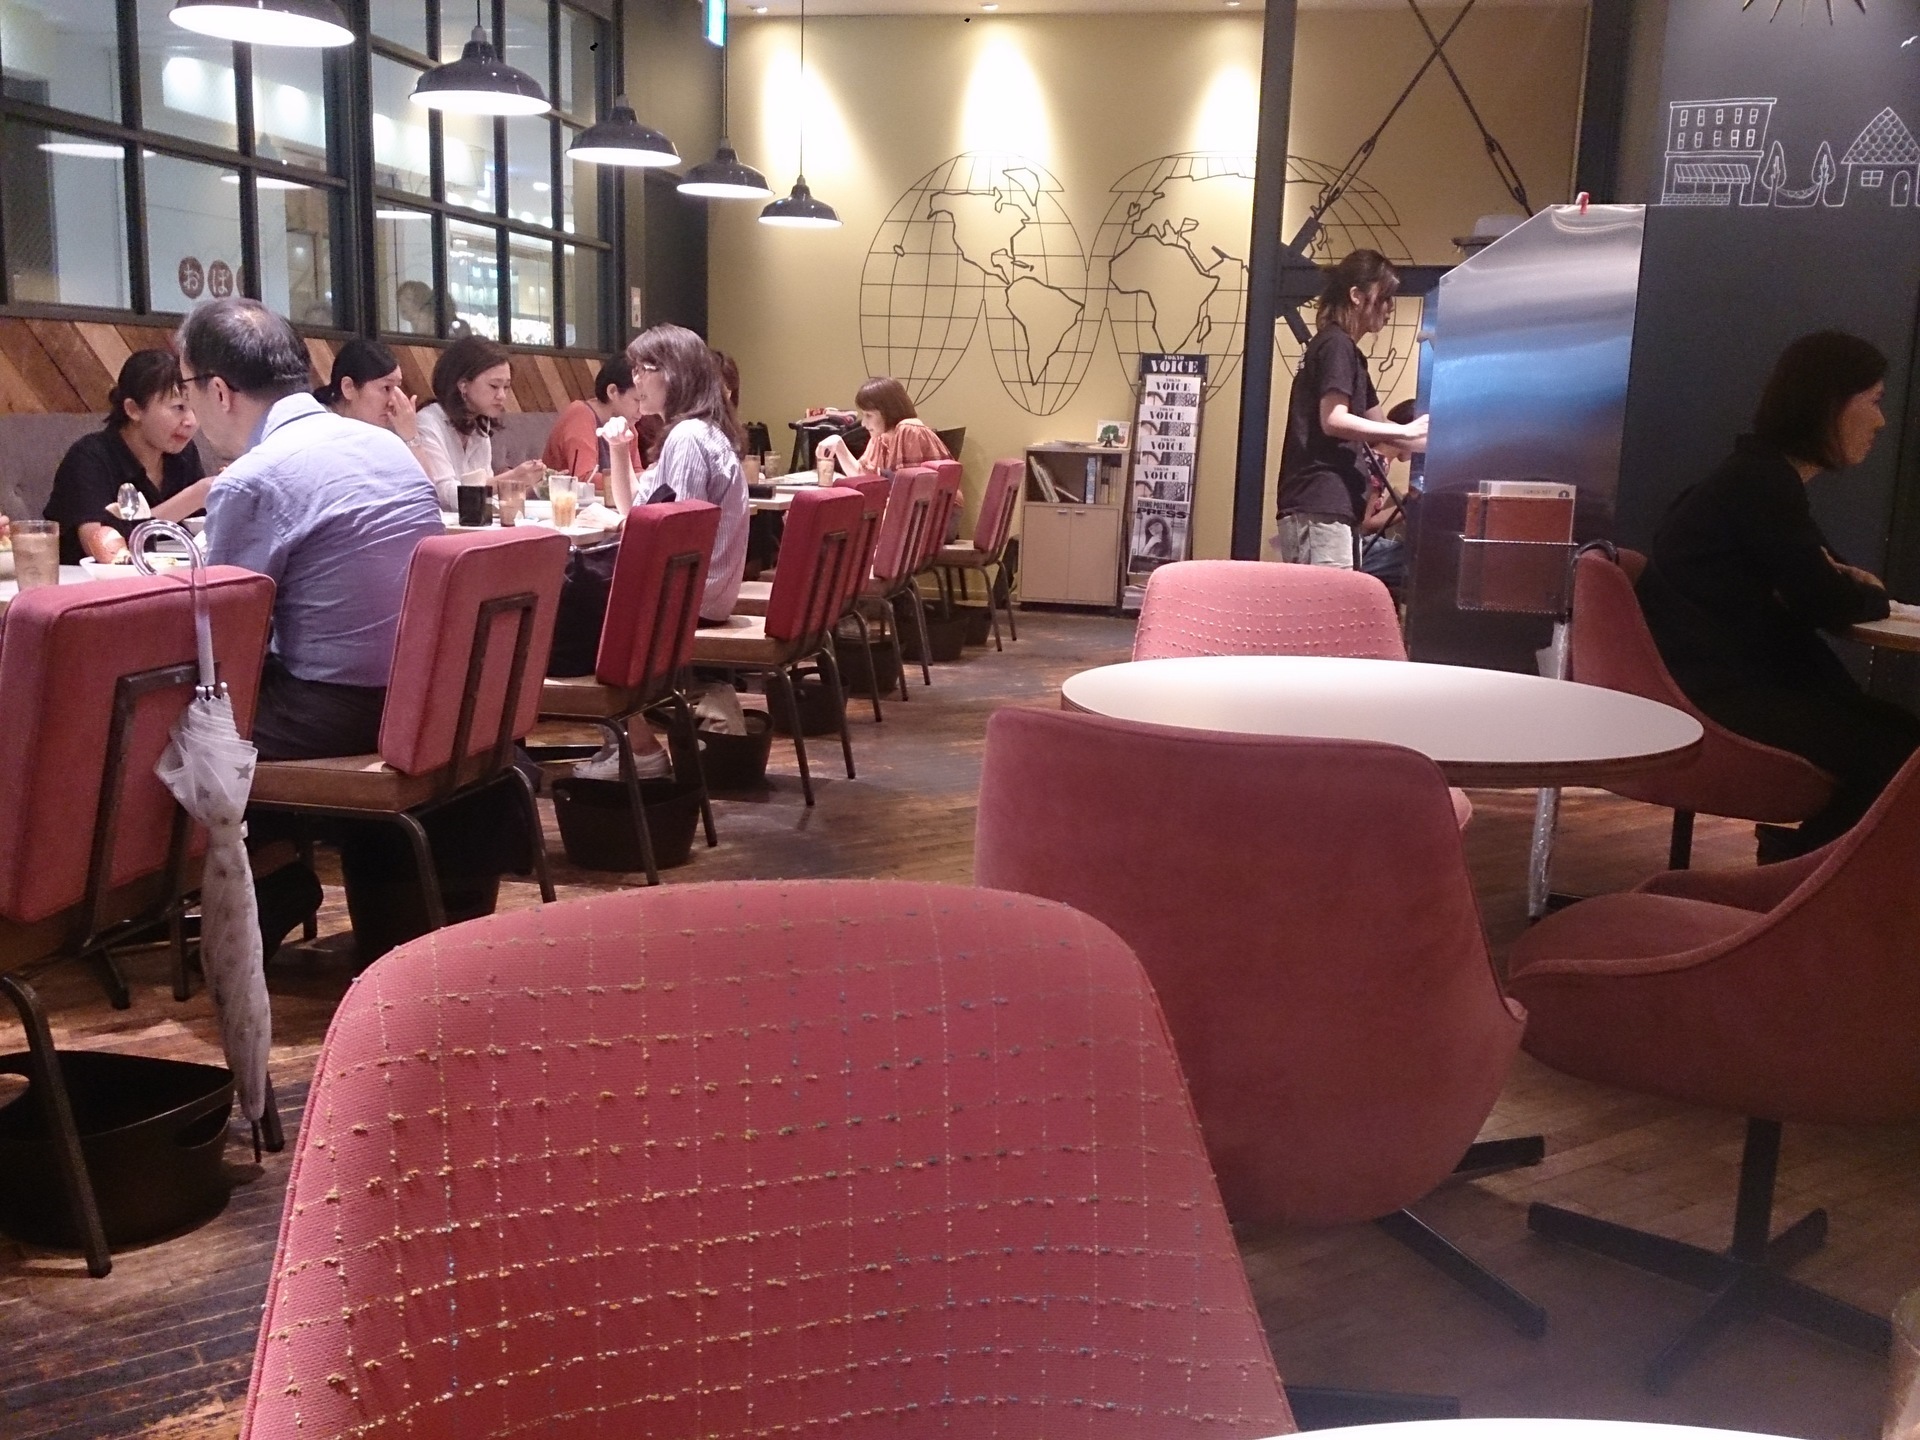 Wired Cafe 武蔵小杉東急スクエア4fでkingタコライス 横浜駅周辺 時々あちらこちら 孤独のワンコインランチ日記